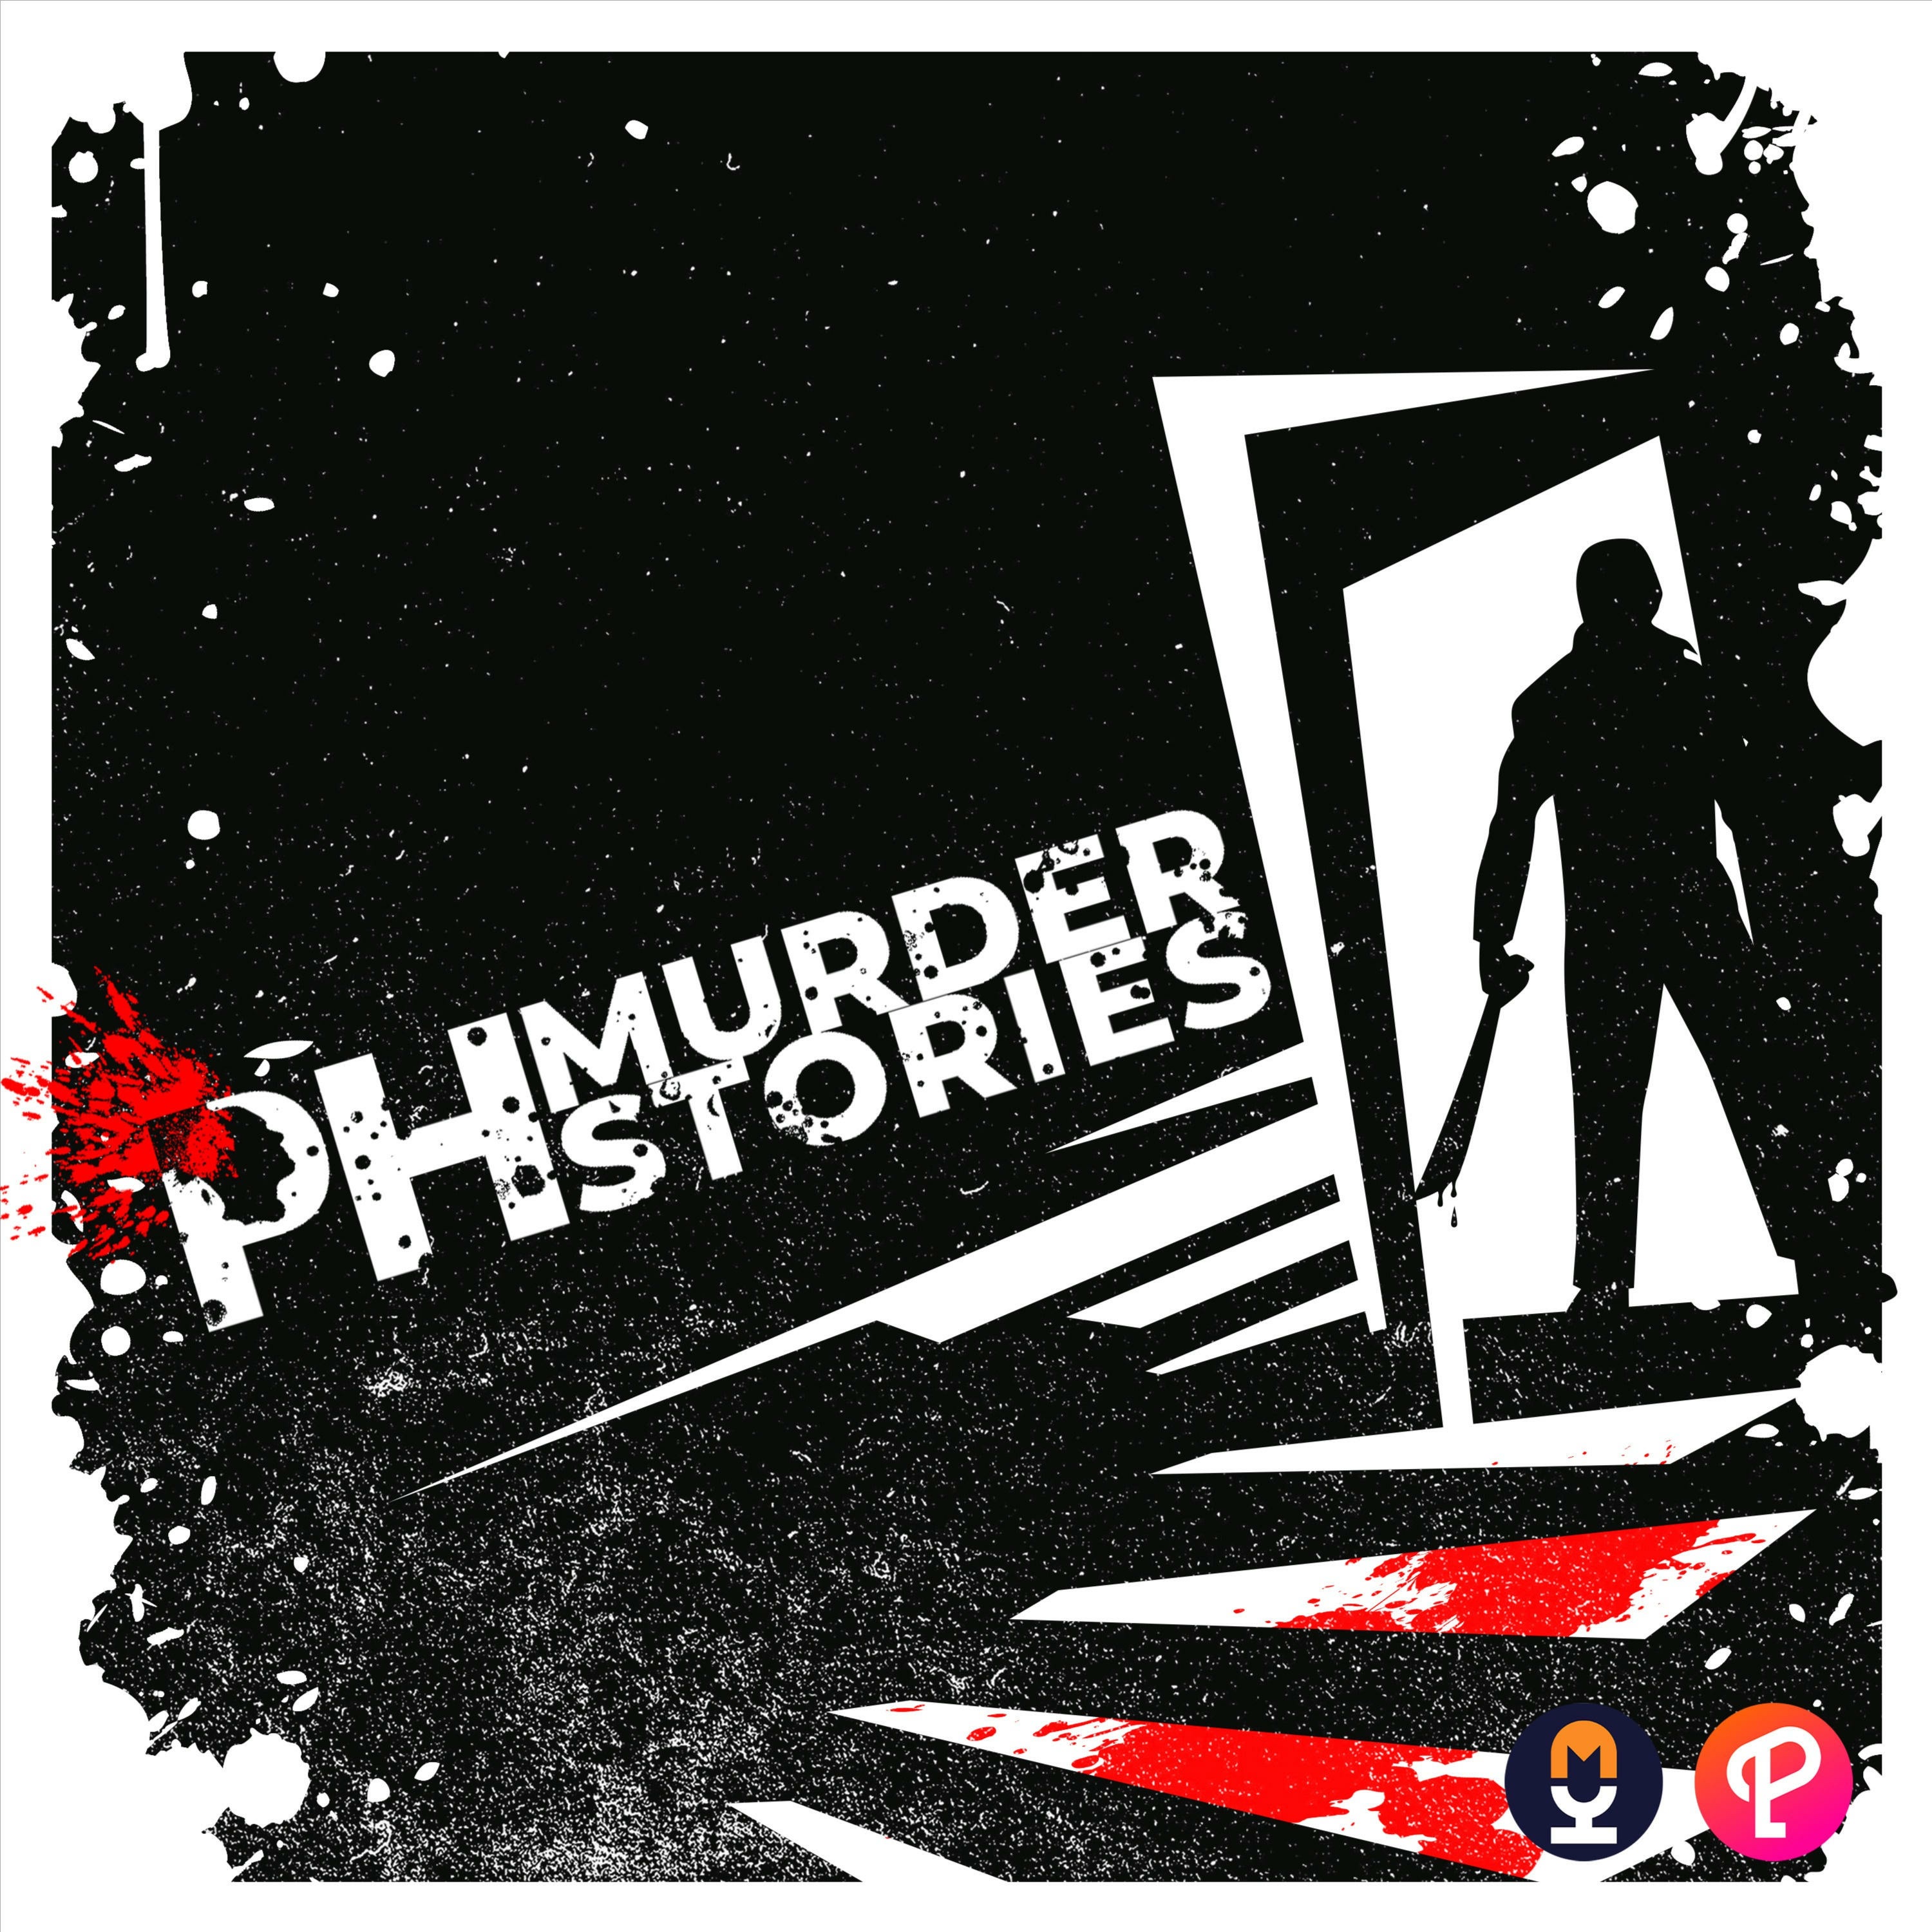 PH Murder Stories